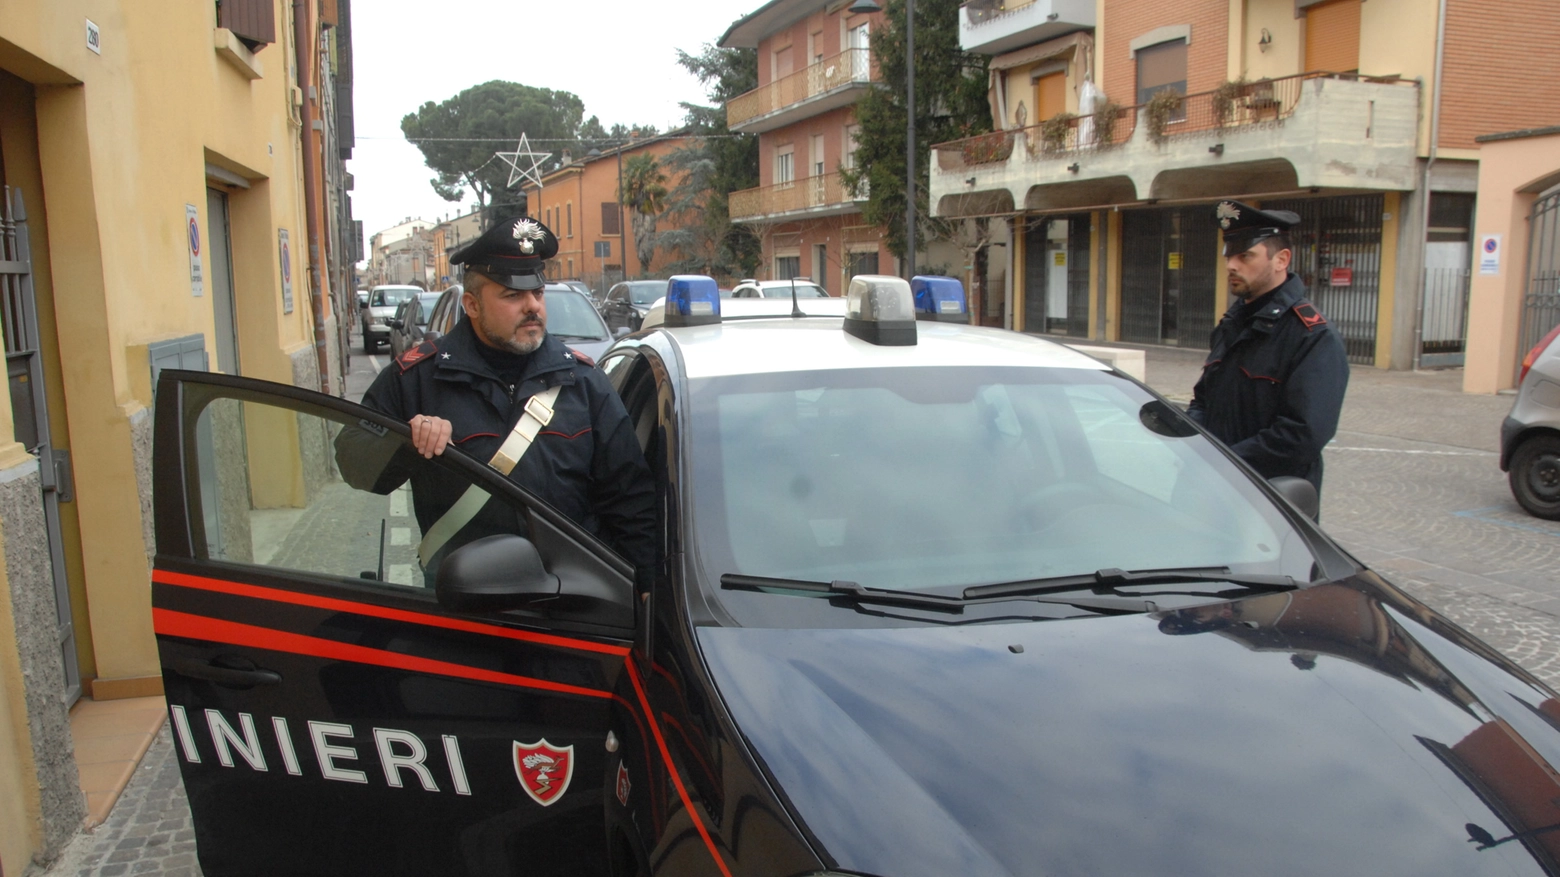 Le indagini sono state effettuate dai carabinieri della compagnia di Sassuolo